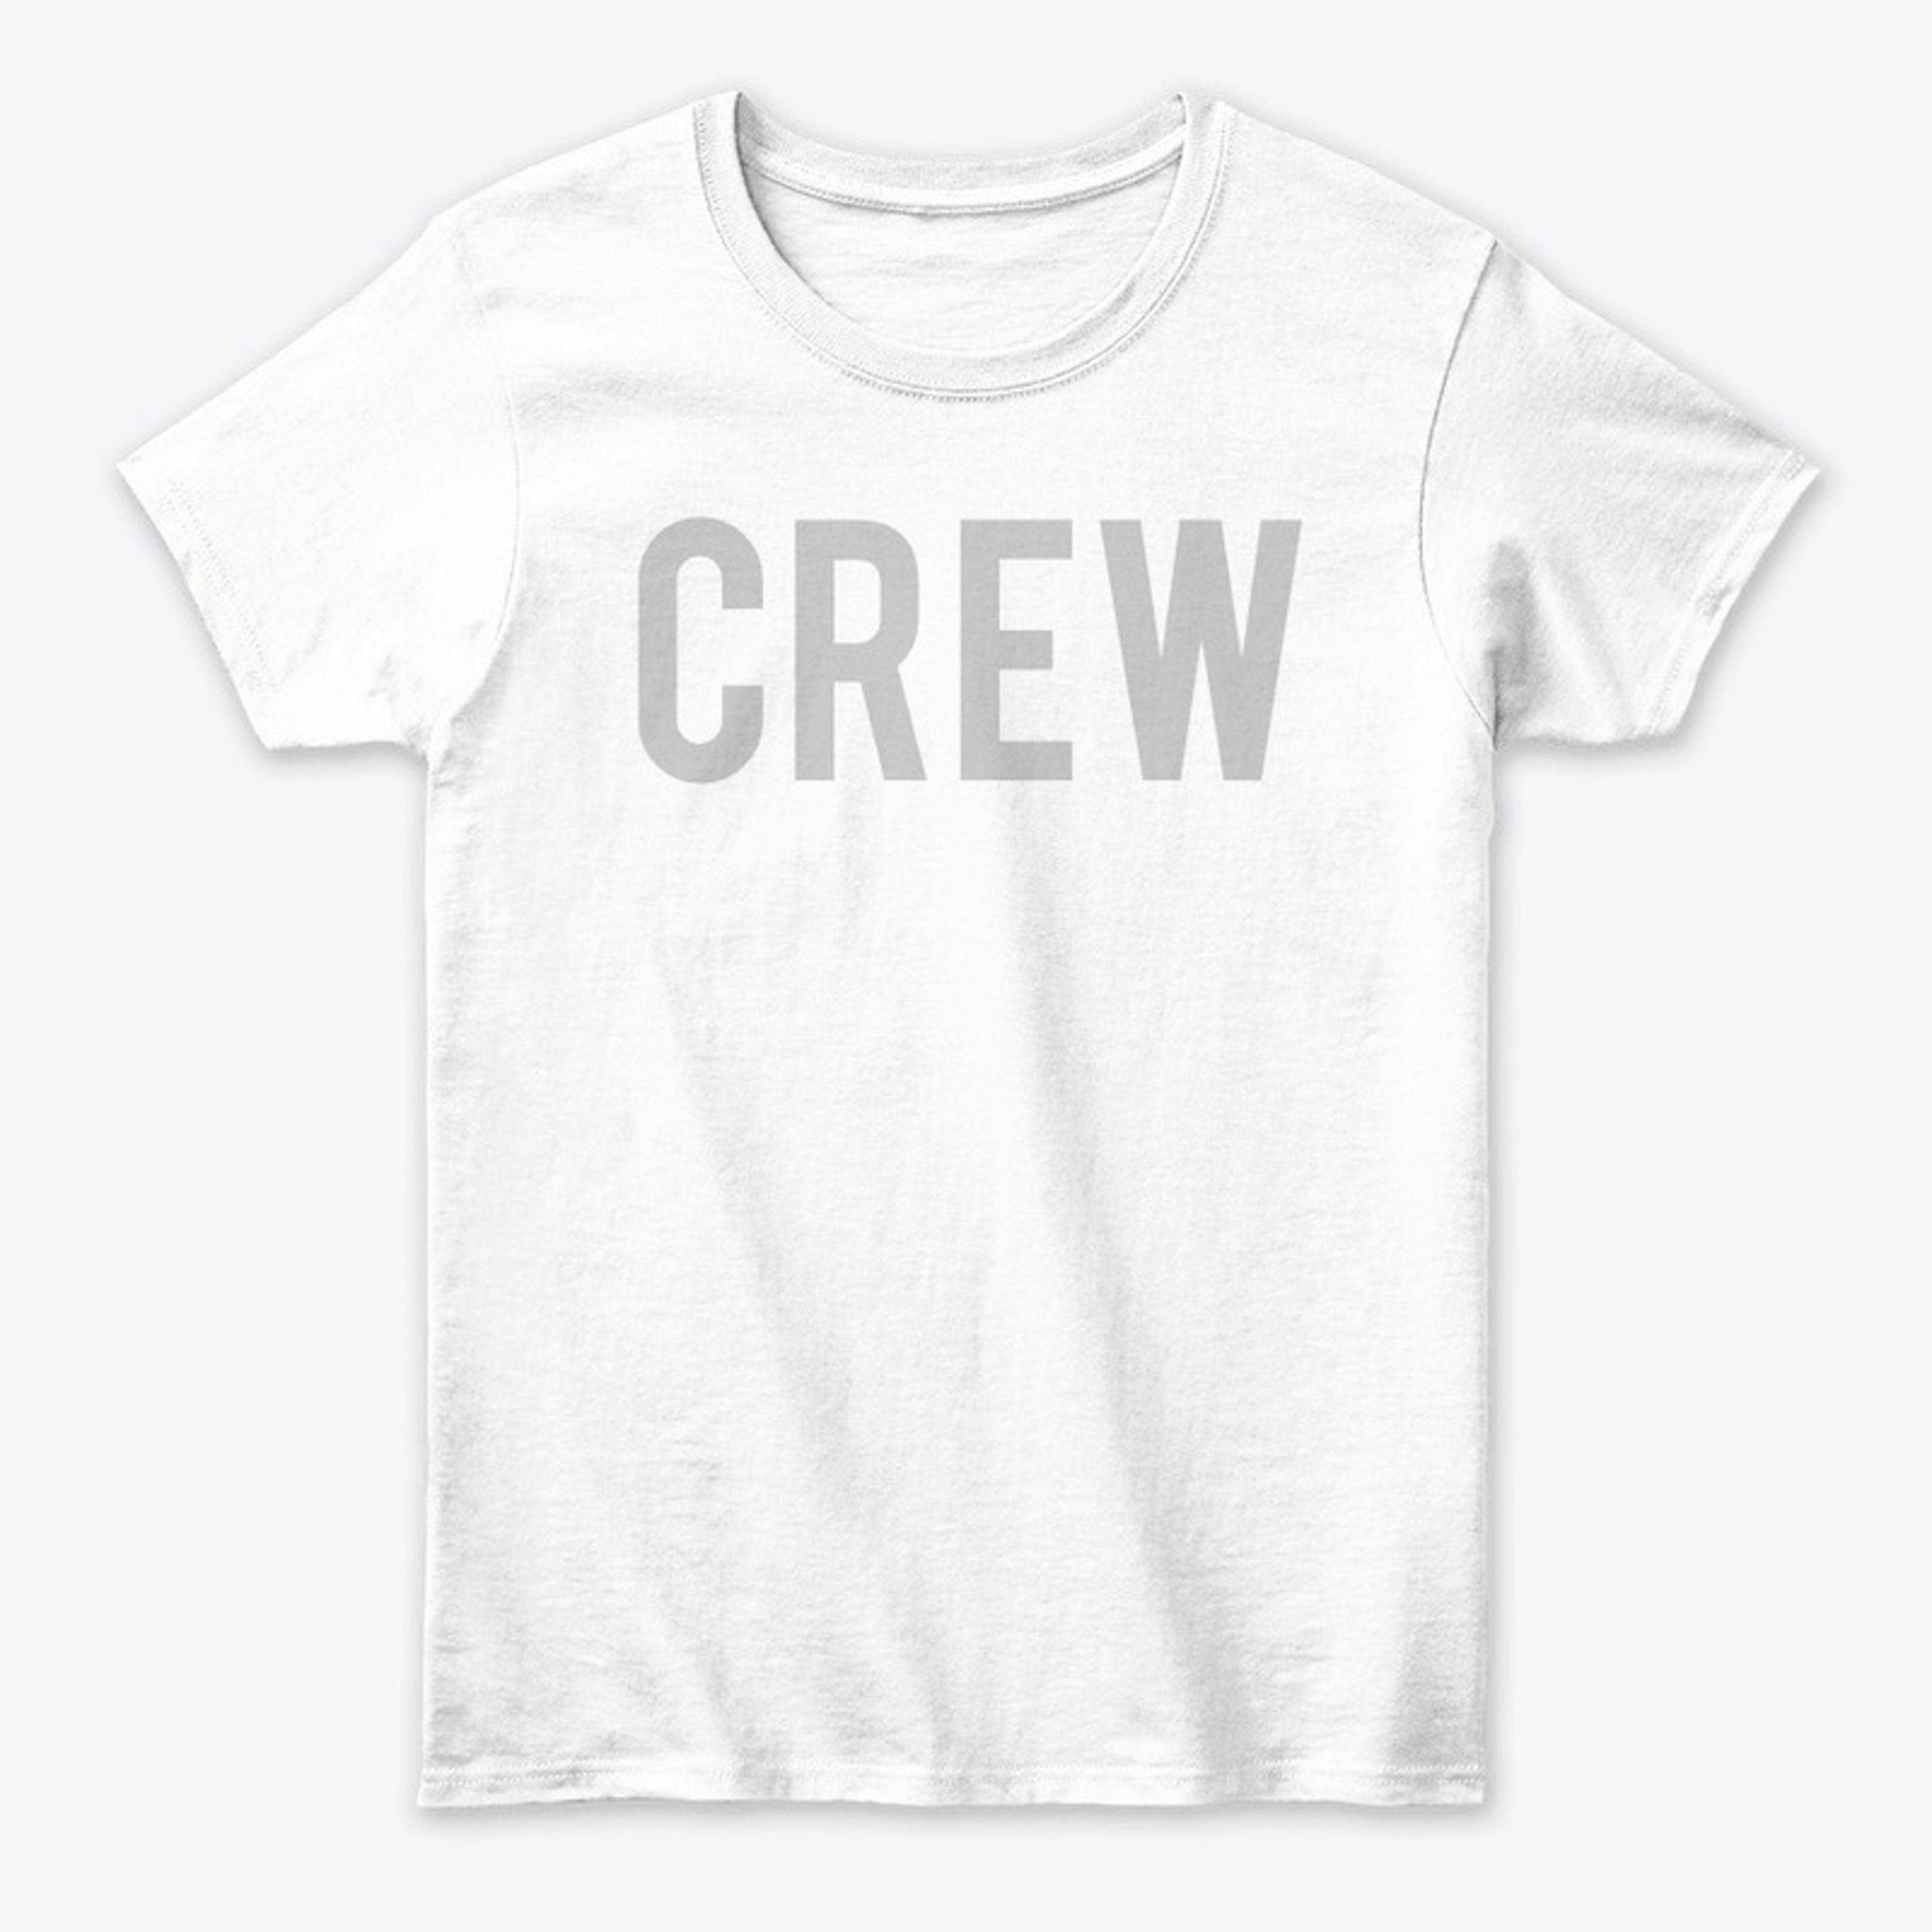 I'm Crew